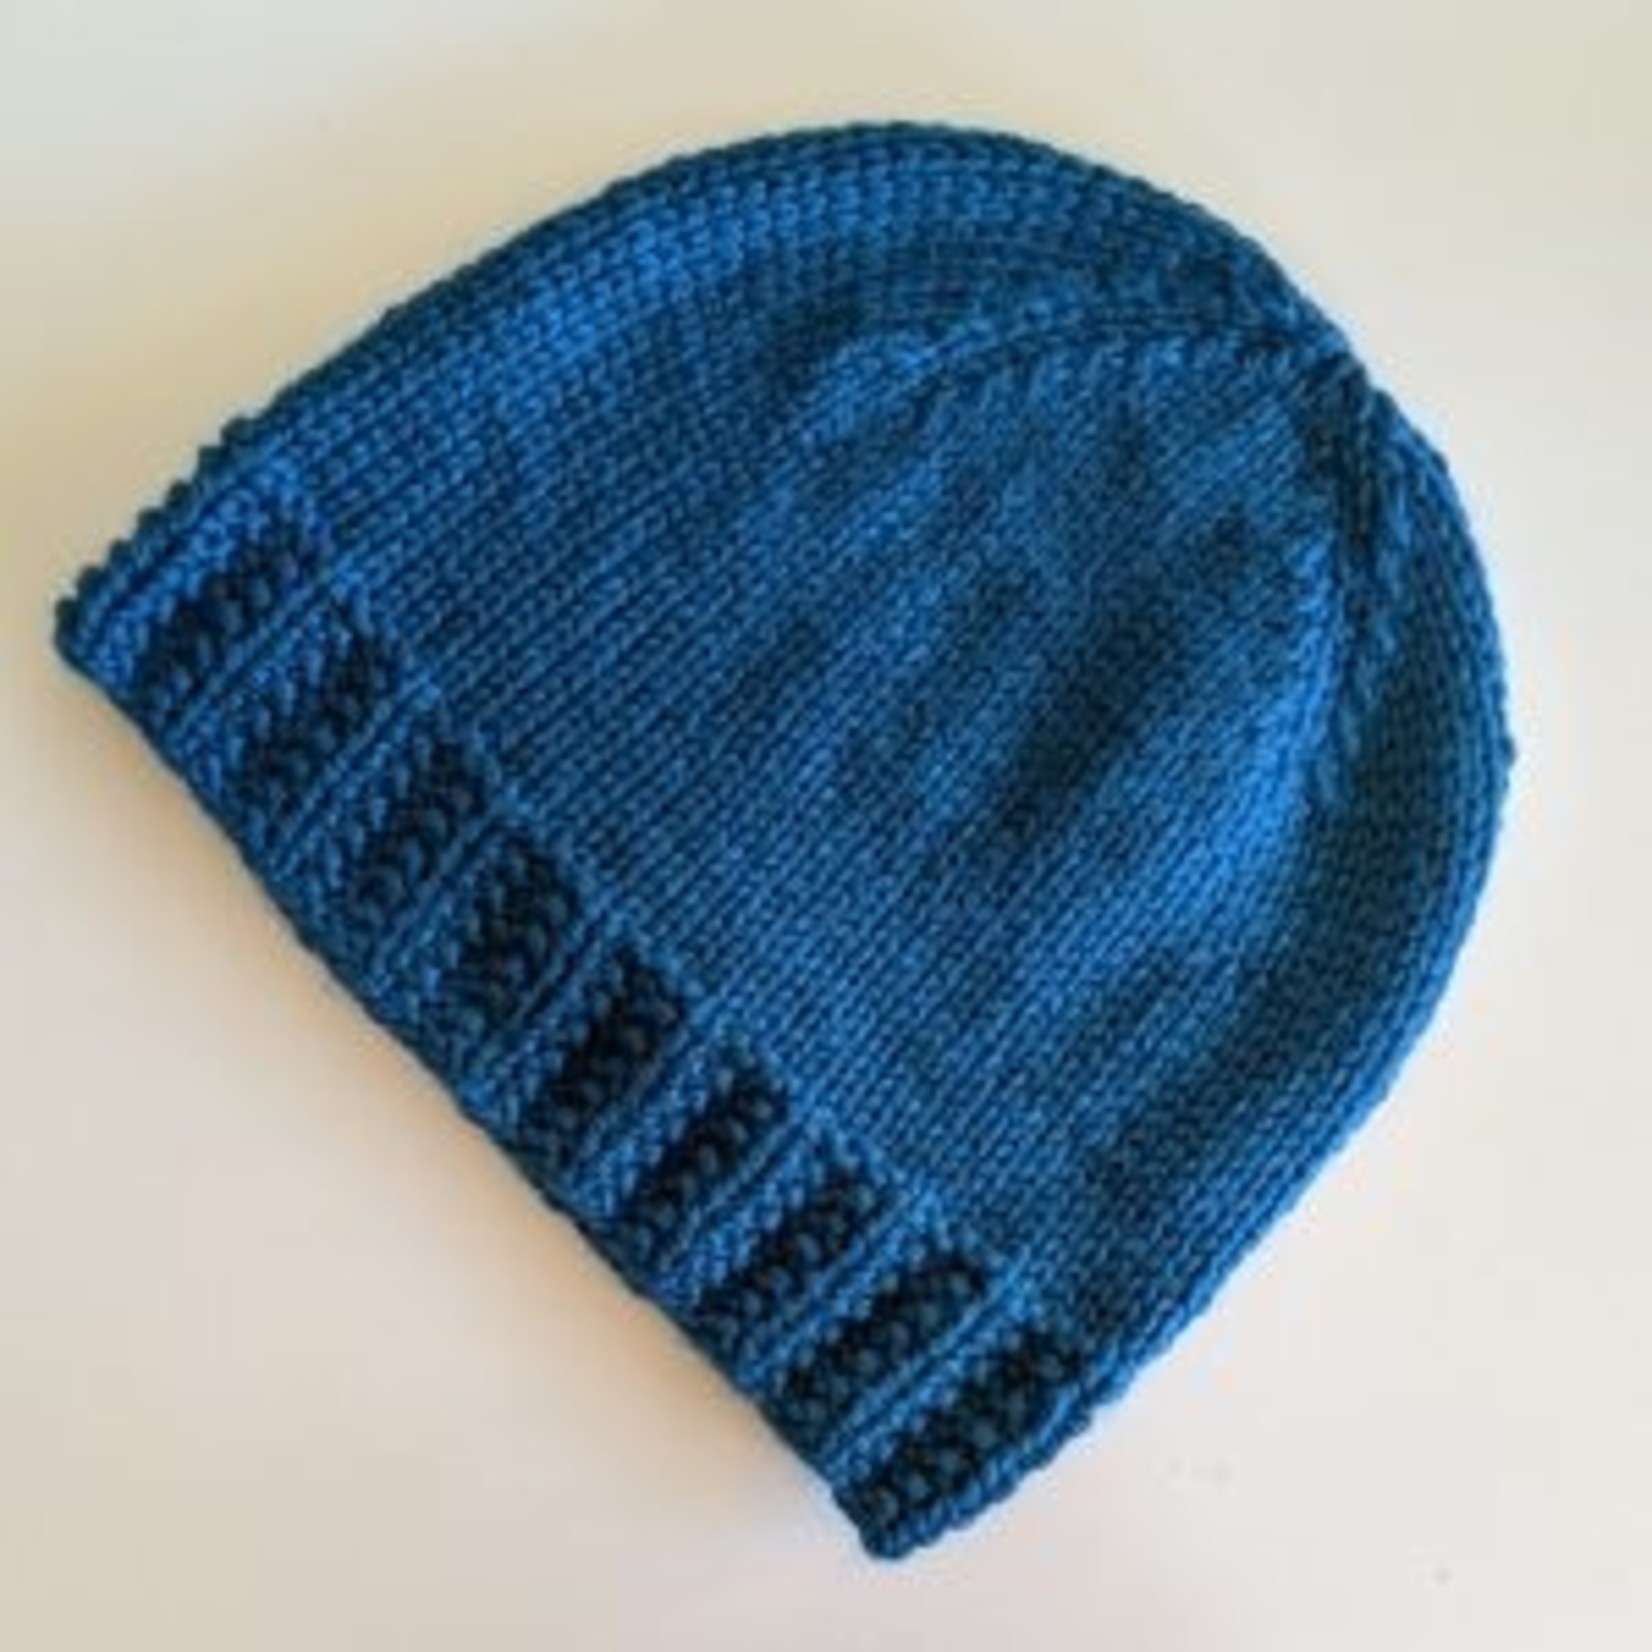 Next Steps Beginner Knitting -  Online via Zoom